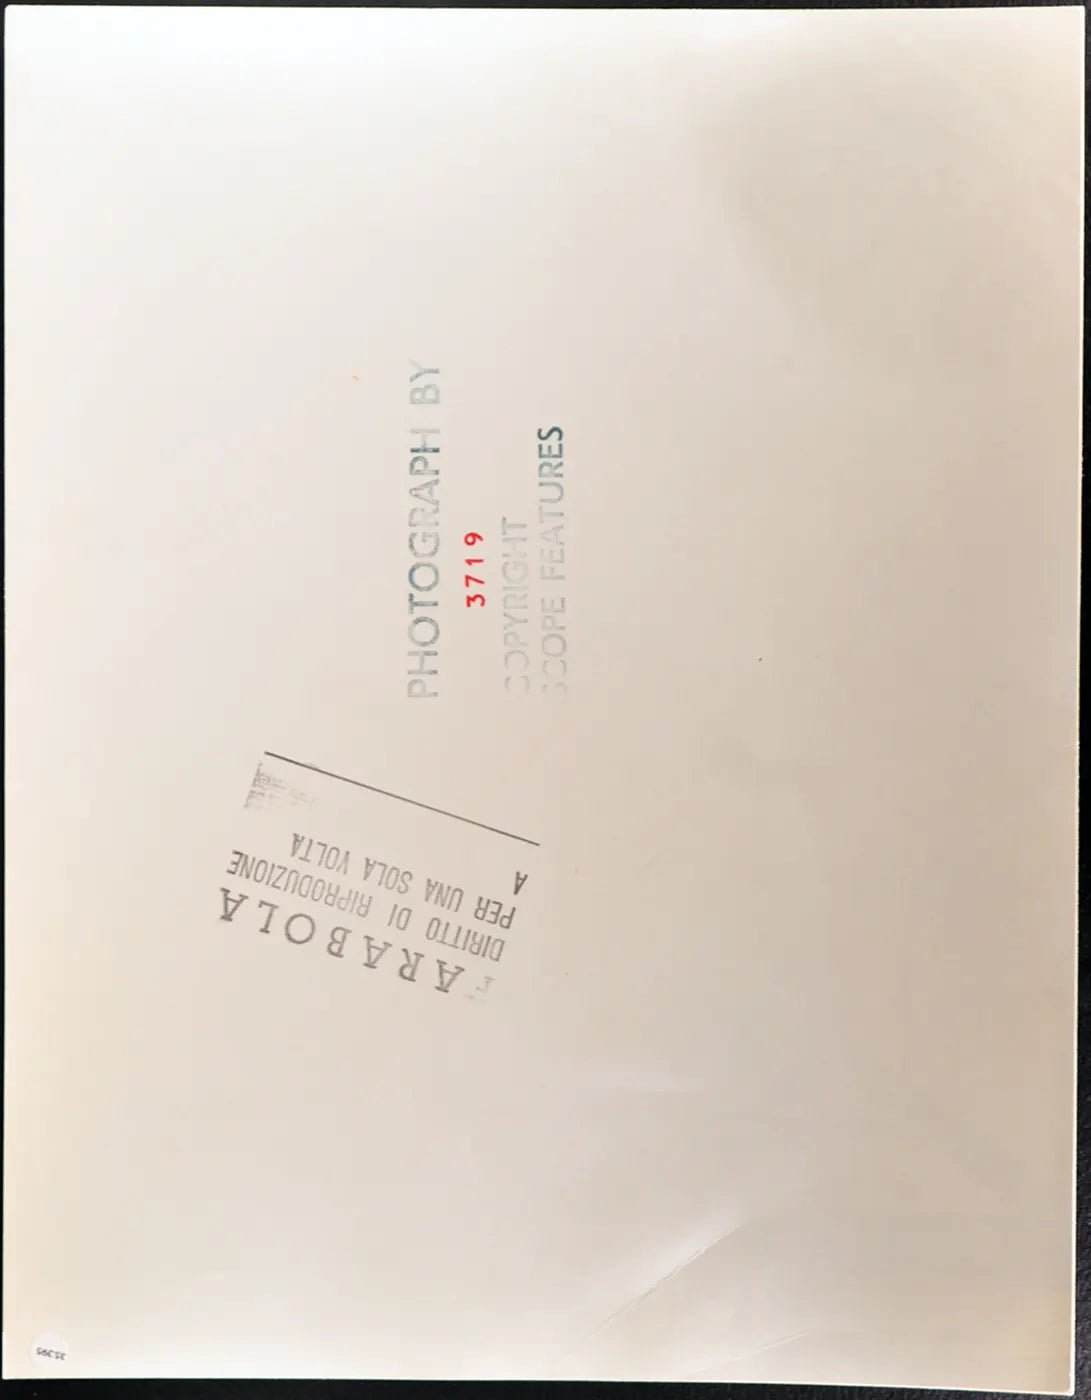 Beagle Università della California Ft 35395 - Stampa 30x40 cm - Farabola Stampa ai sali d'argento